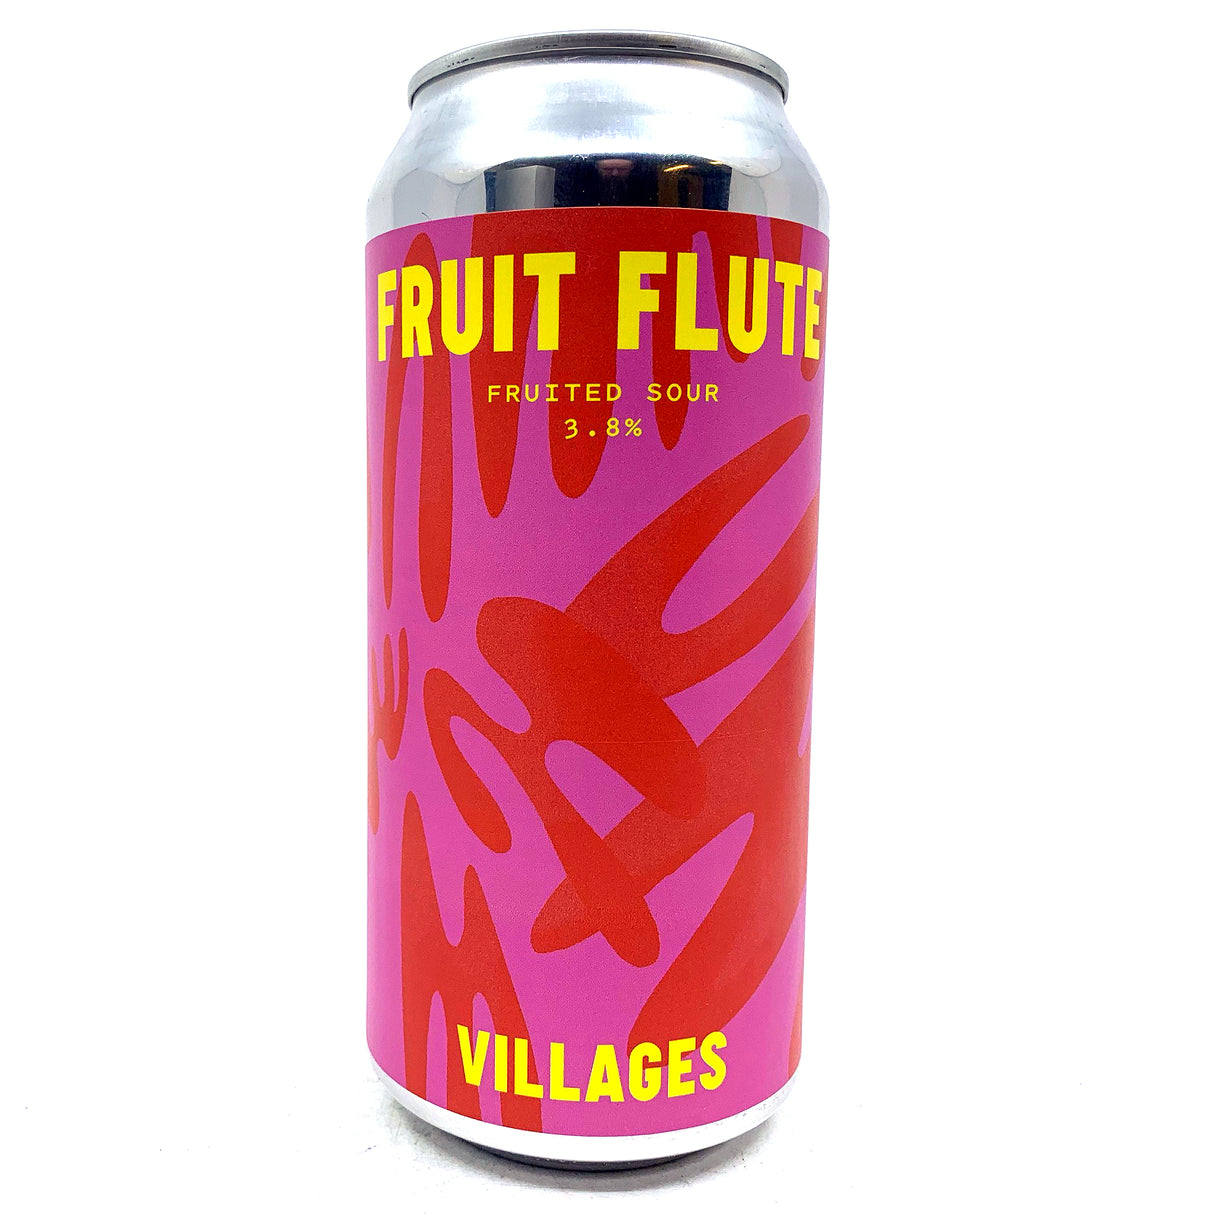 Villages Fruit Flute Fruited Sour 3.8% (440ml can)-Hop Burns & Black